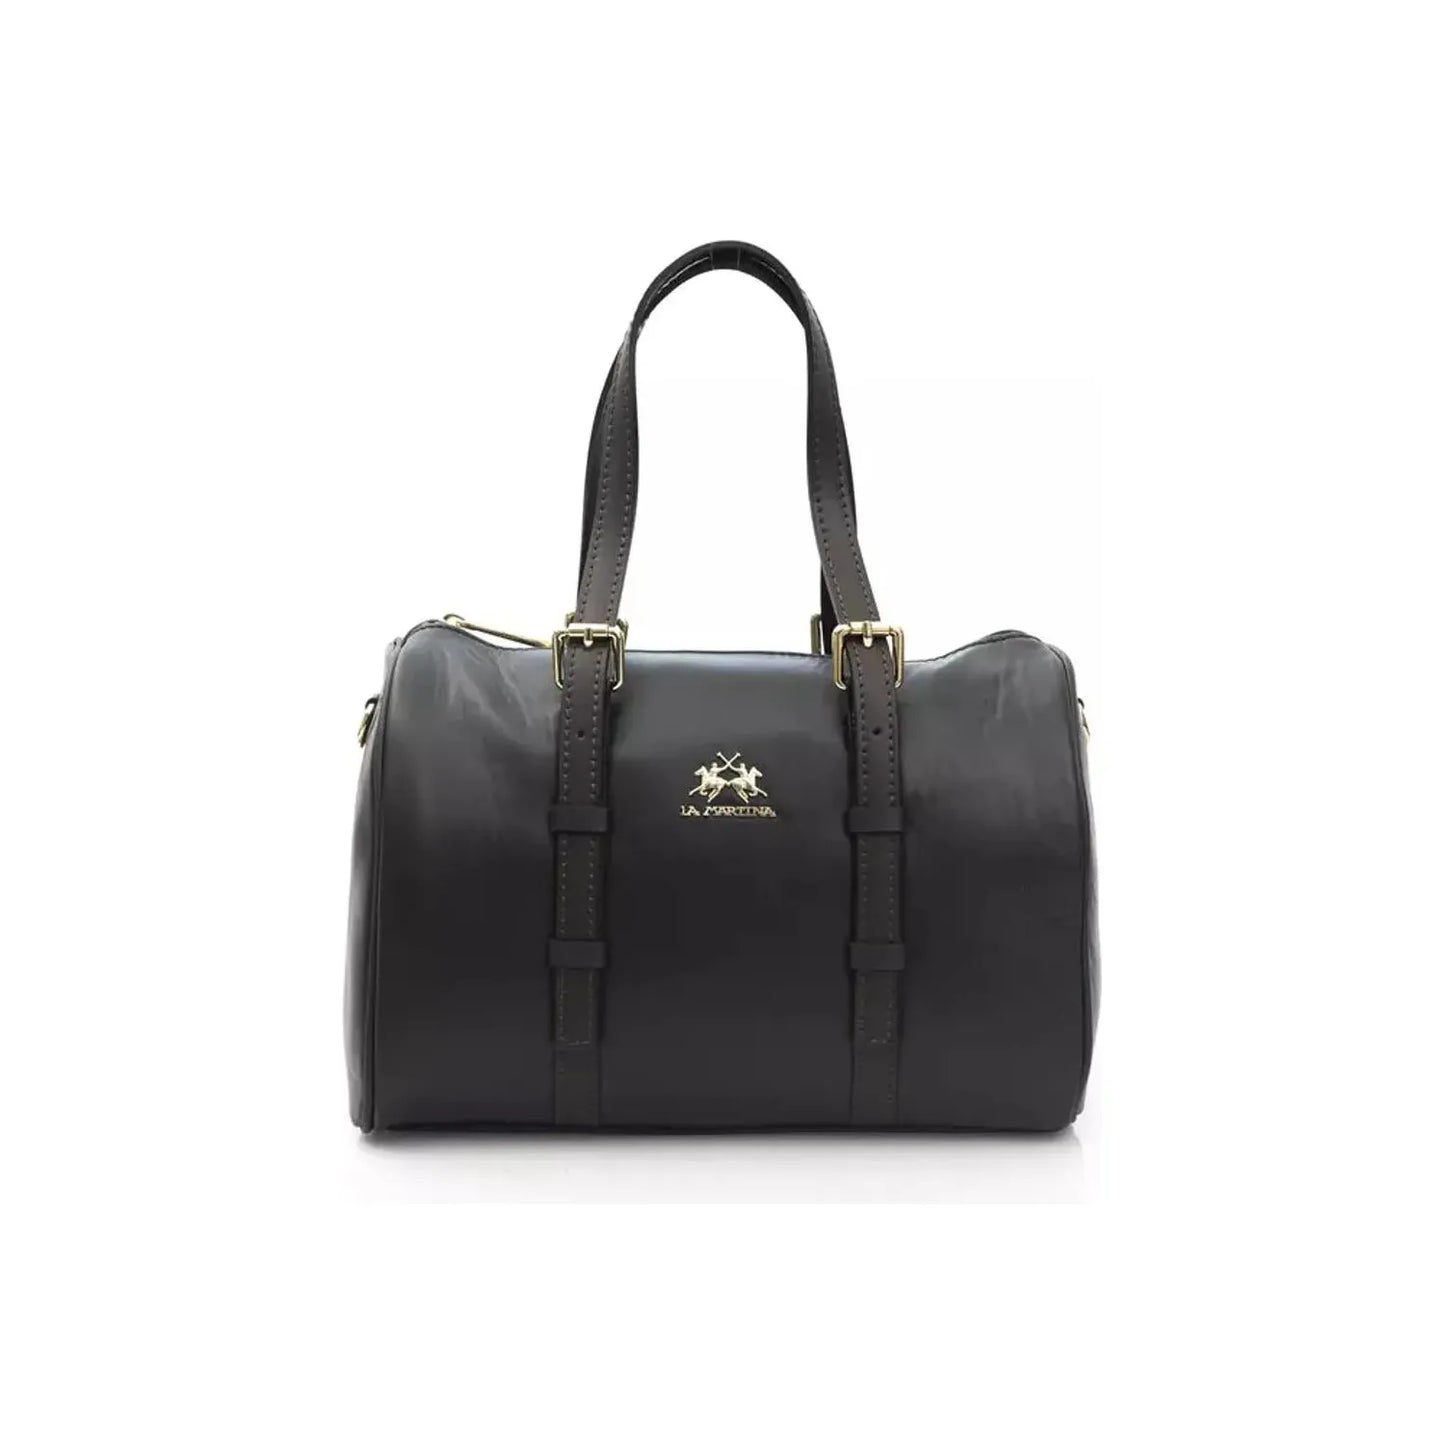 La Martina Elegant Black Leather Crossbody Bag black-messenger-bag-1 product-22970-1126787358-21-1fd5266a-a01.webp